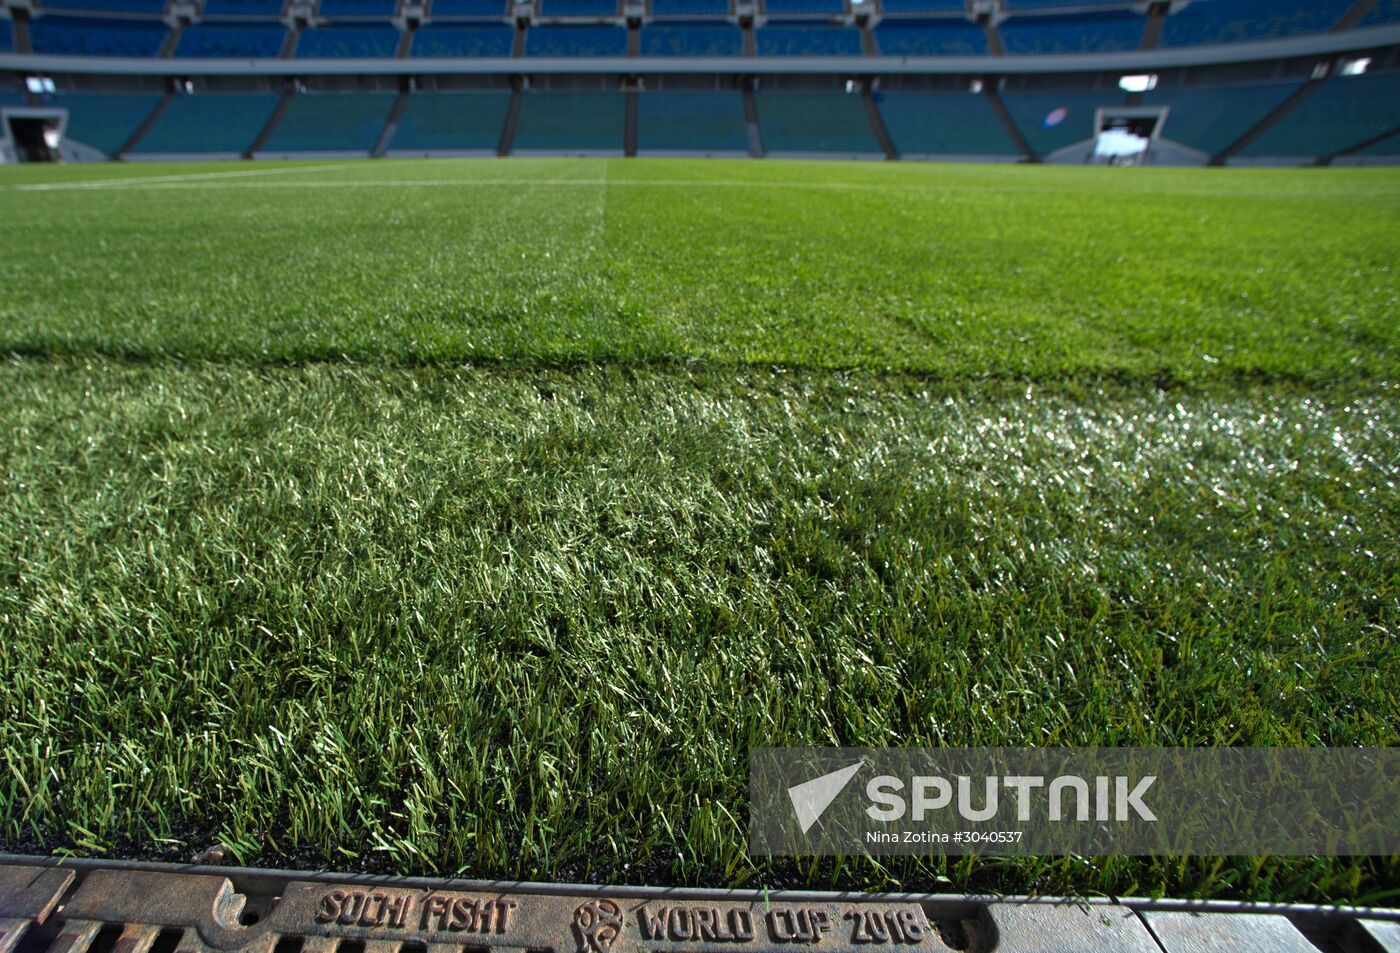 FIFA inspects Fisht Stadium